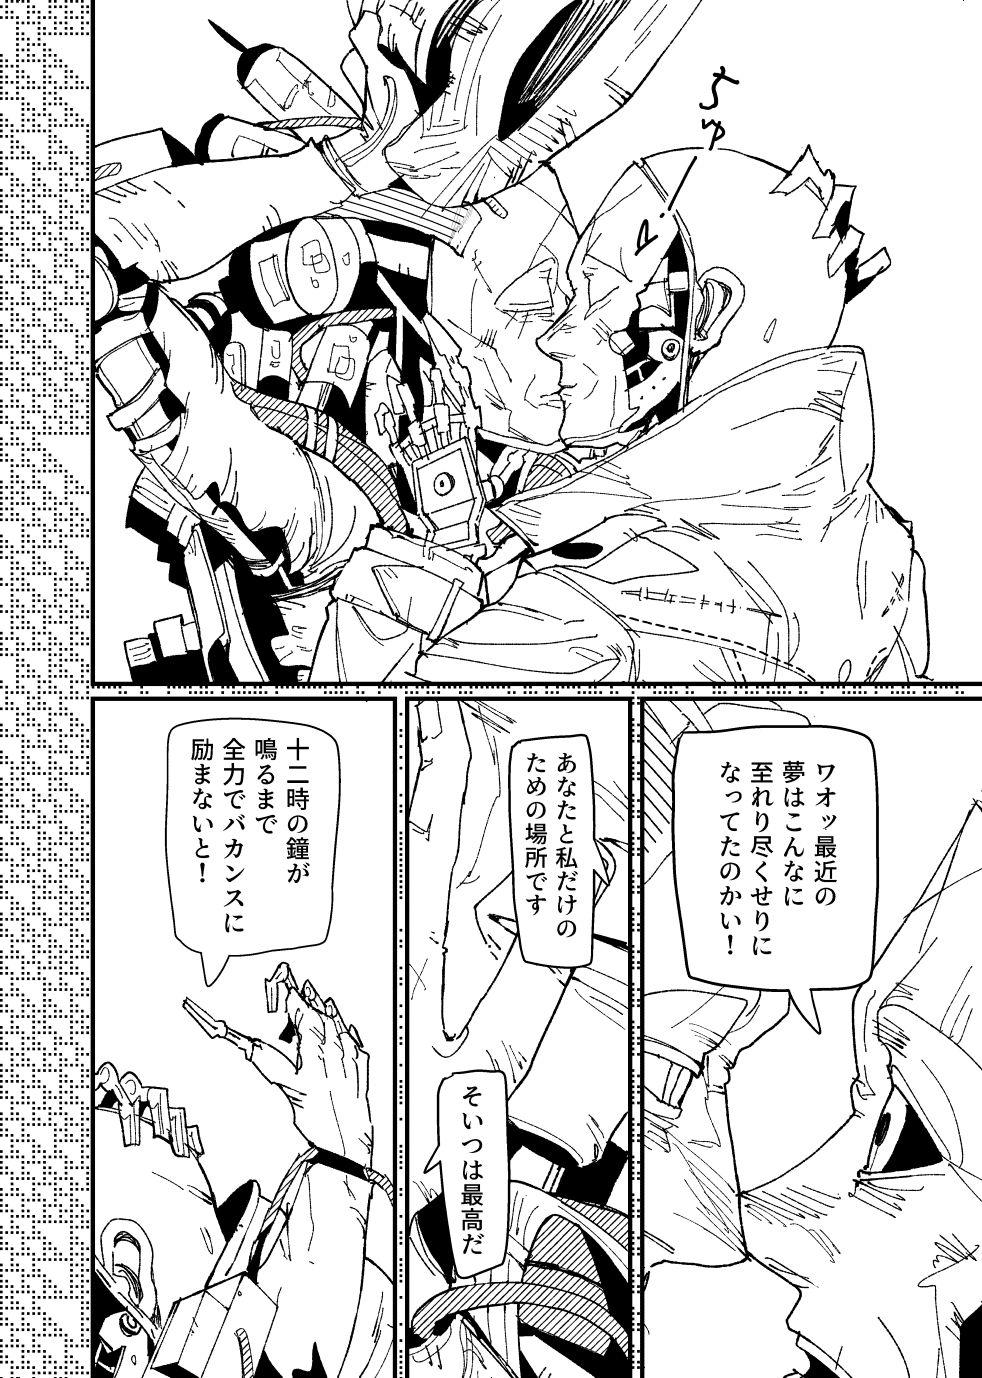 [Tanokura] FO4 [R18] Dimaniku Manga 9